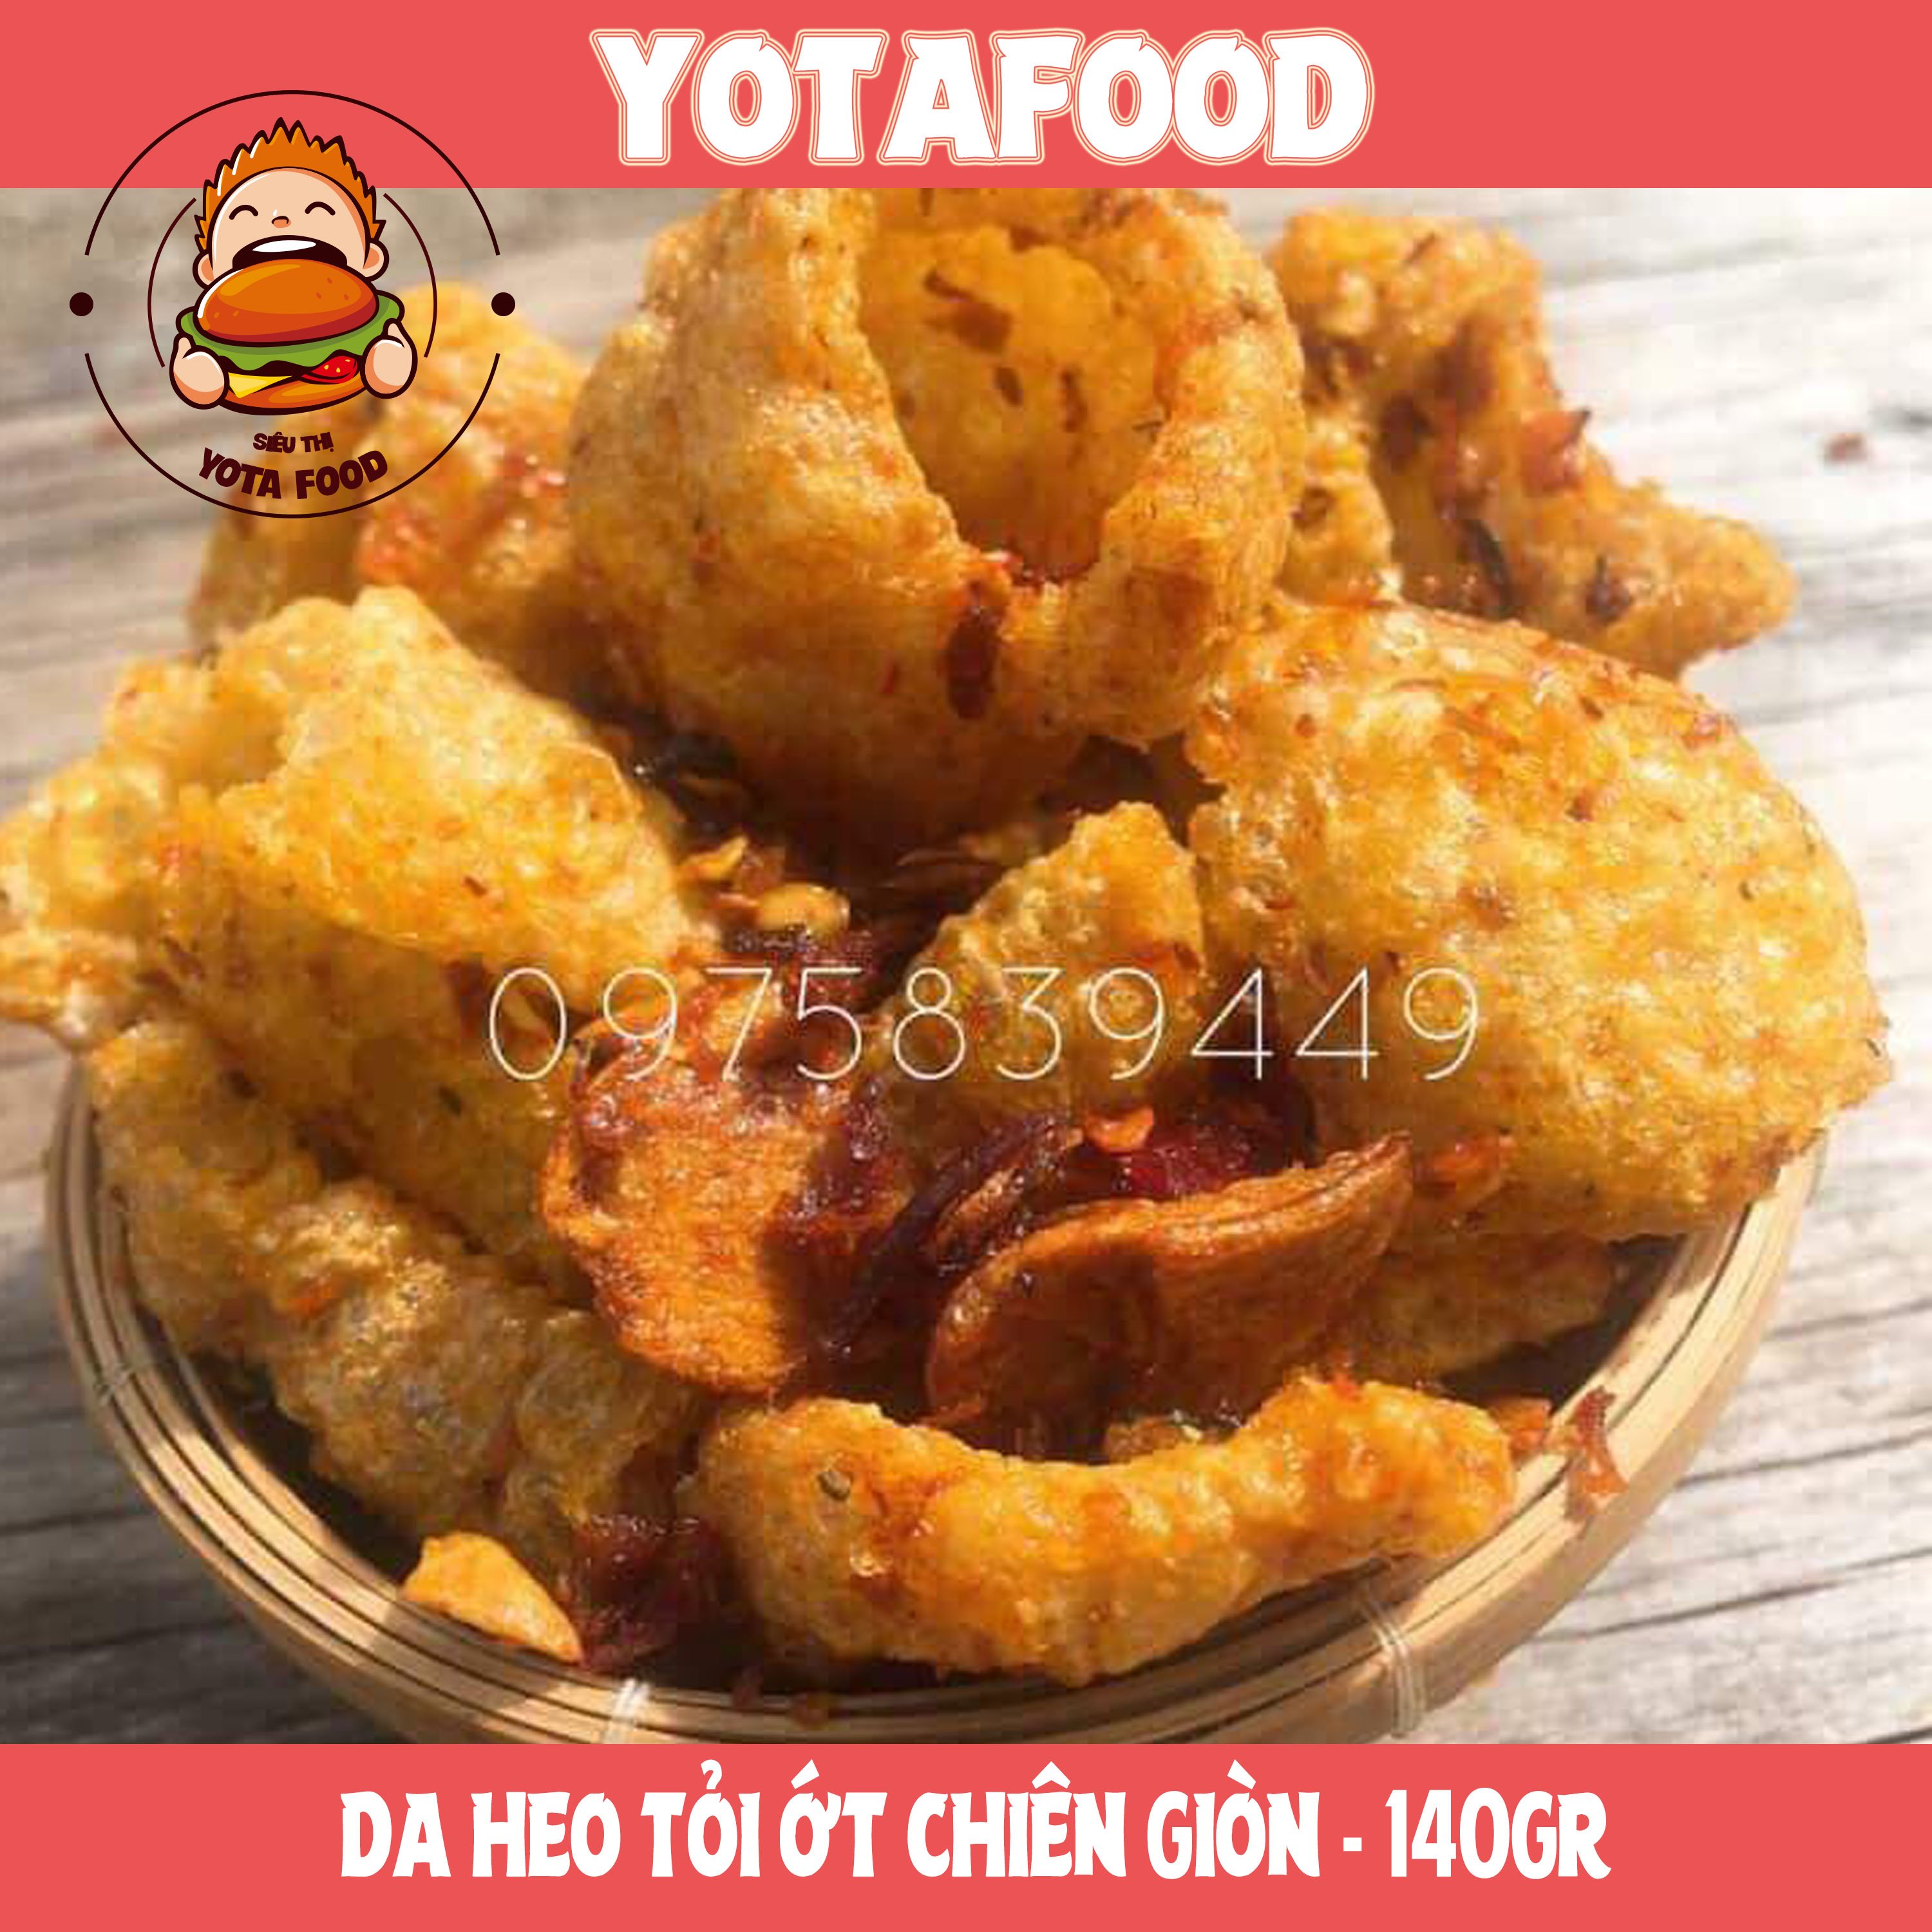 Da heo tỏi ớt chiên giòn Yotafood 140g đồ ăn vặt vừa ngon vừa rẻ